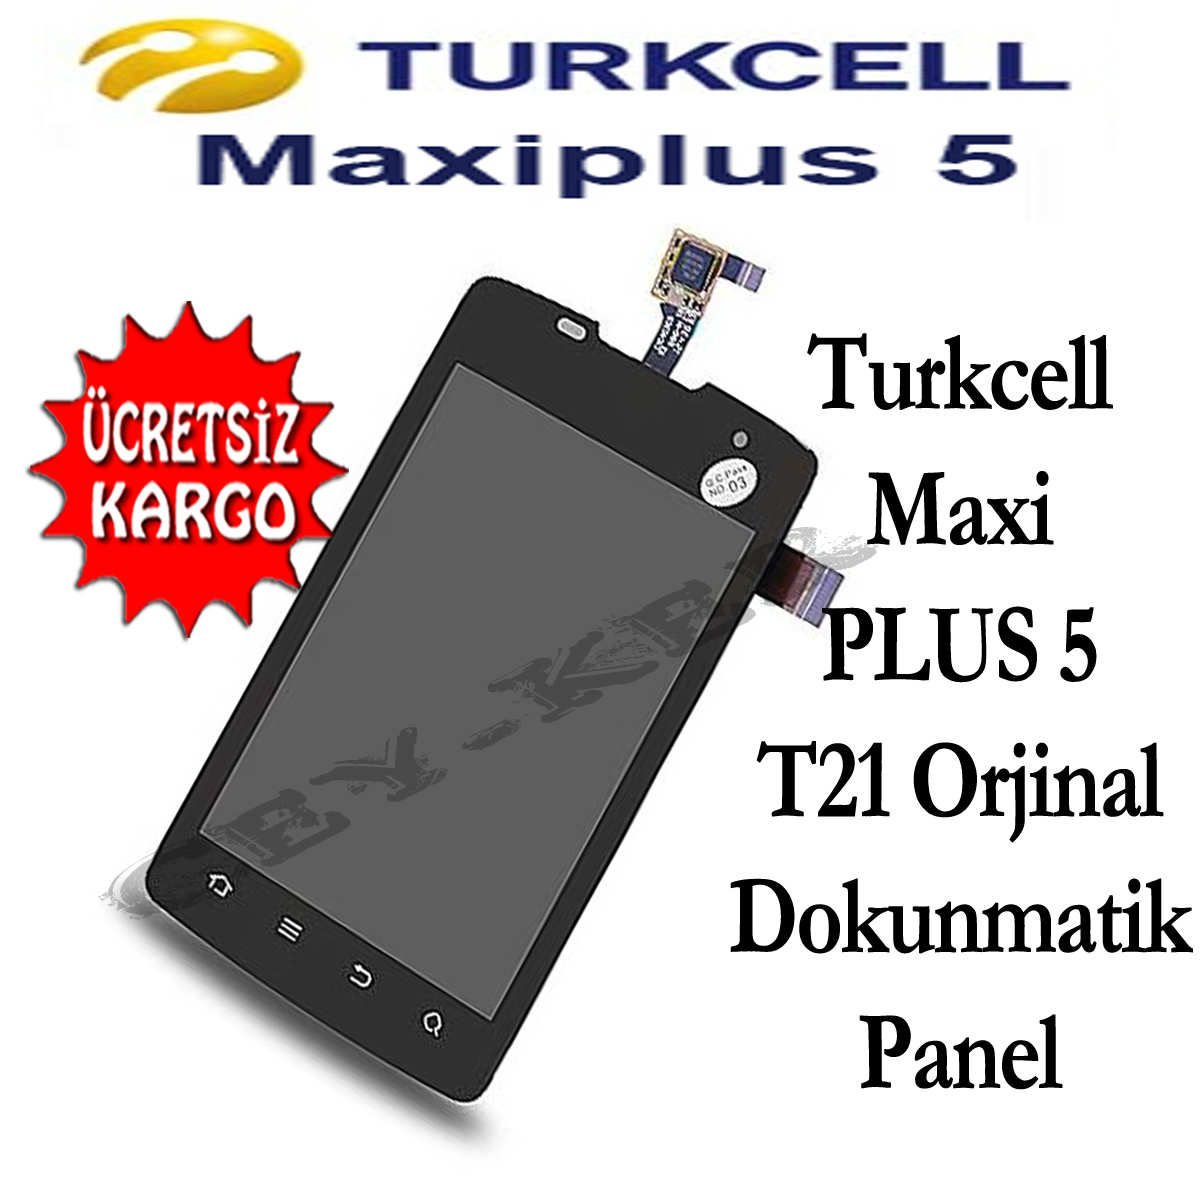 Turkcell MaxiPLUS 5 T21 Orjinal Dokunmatik Panel